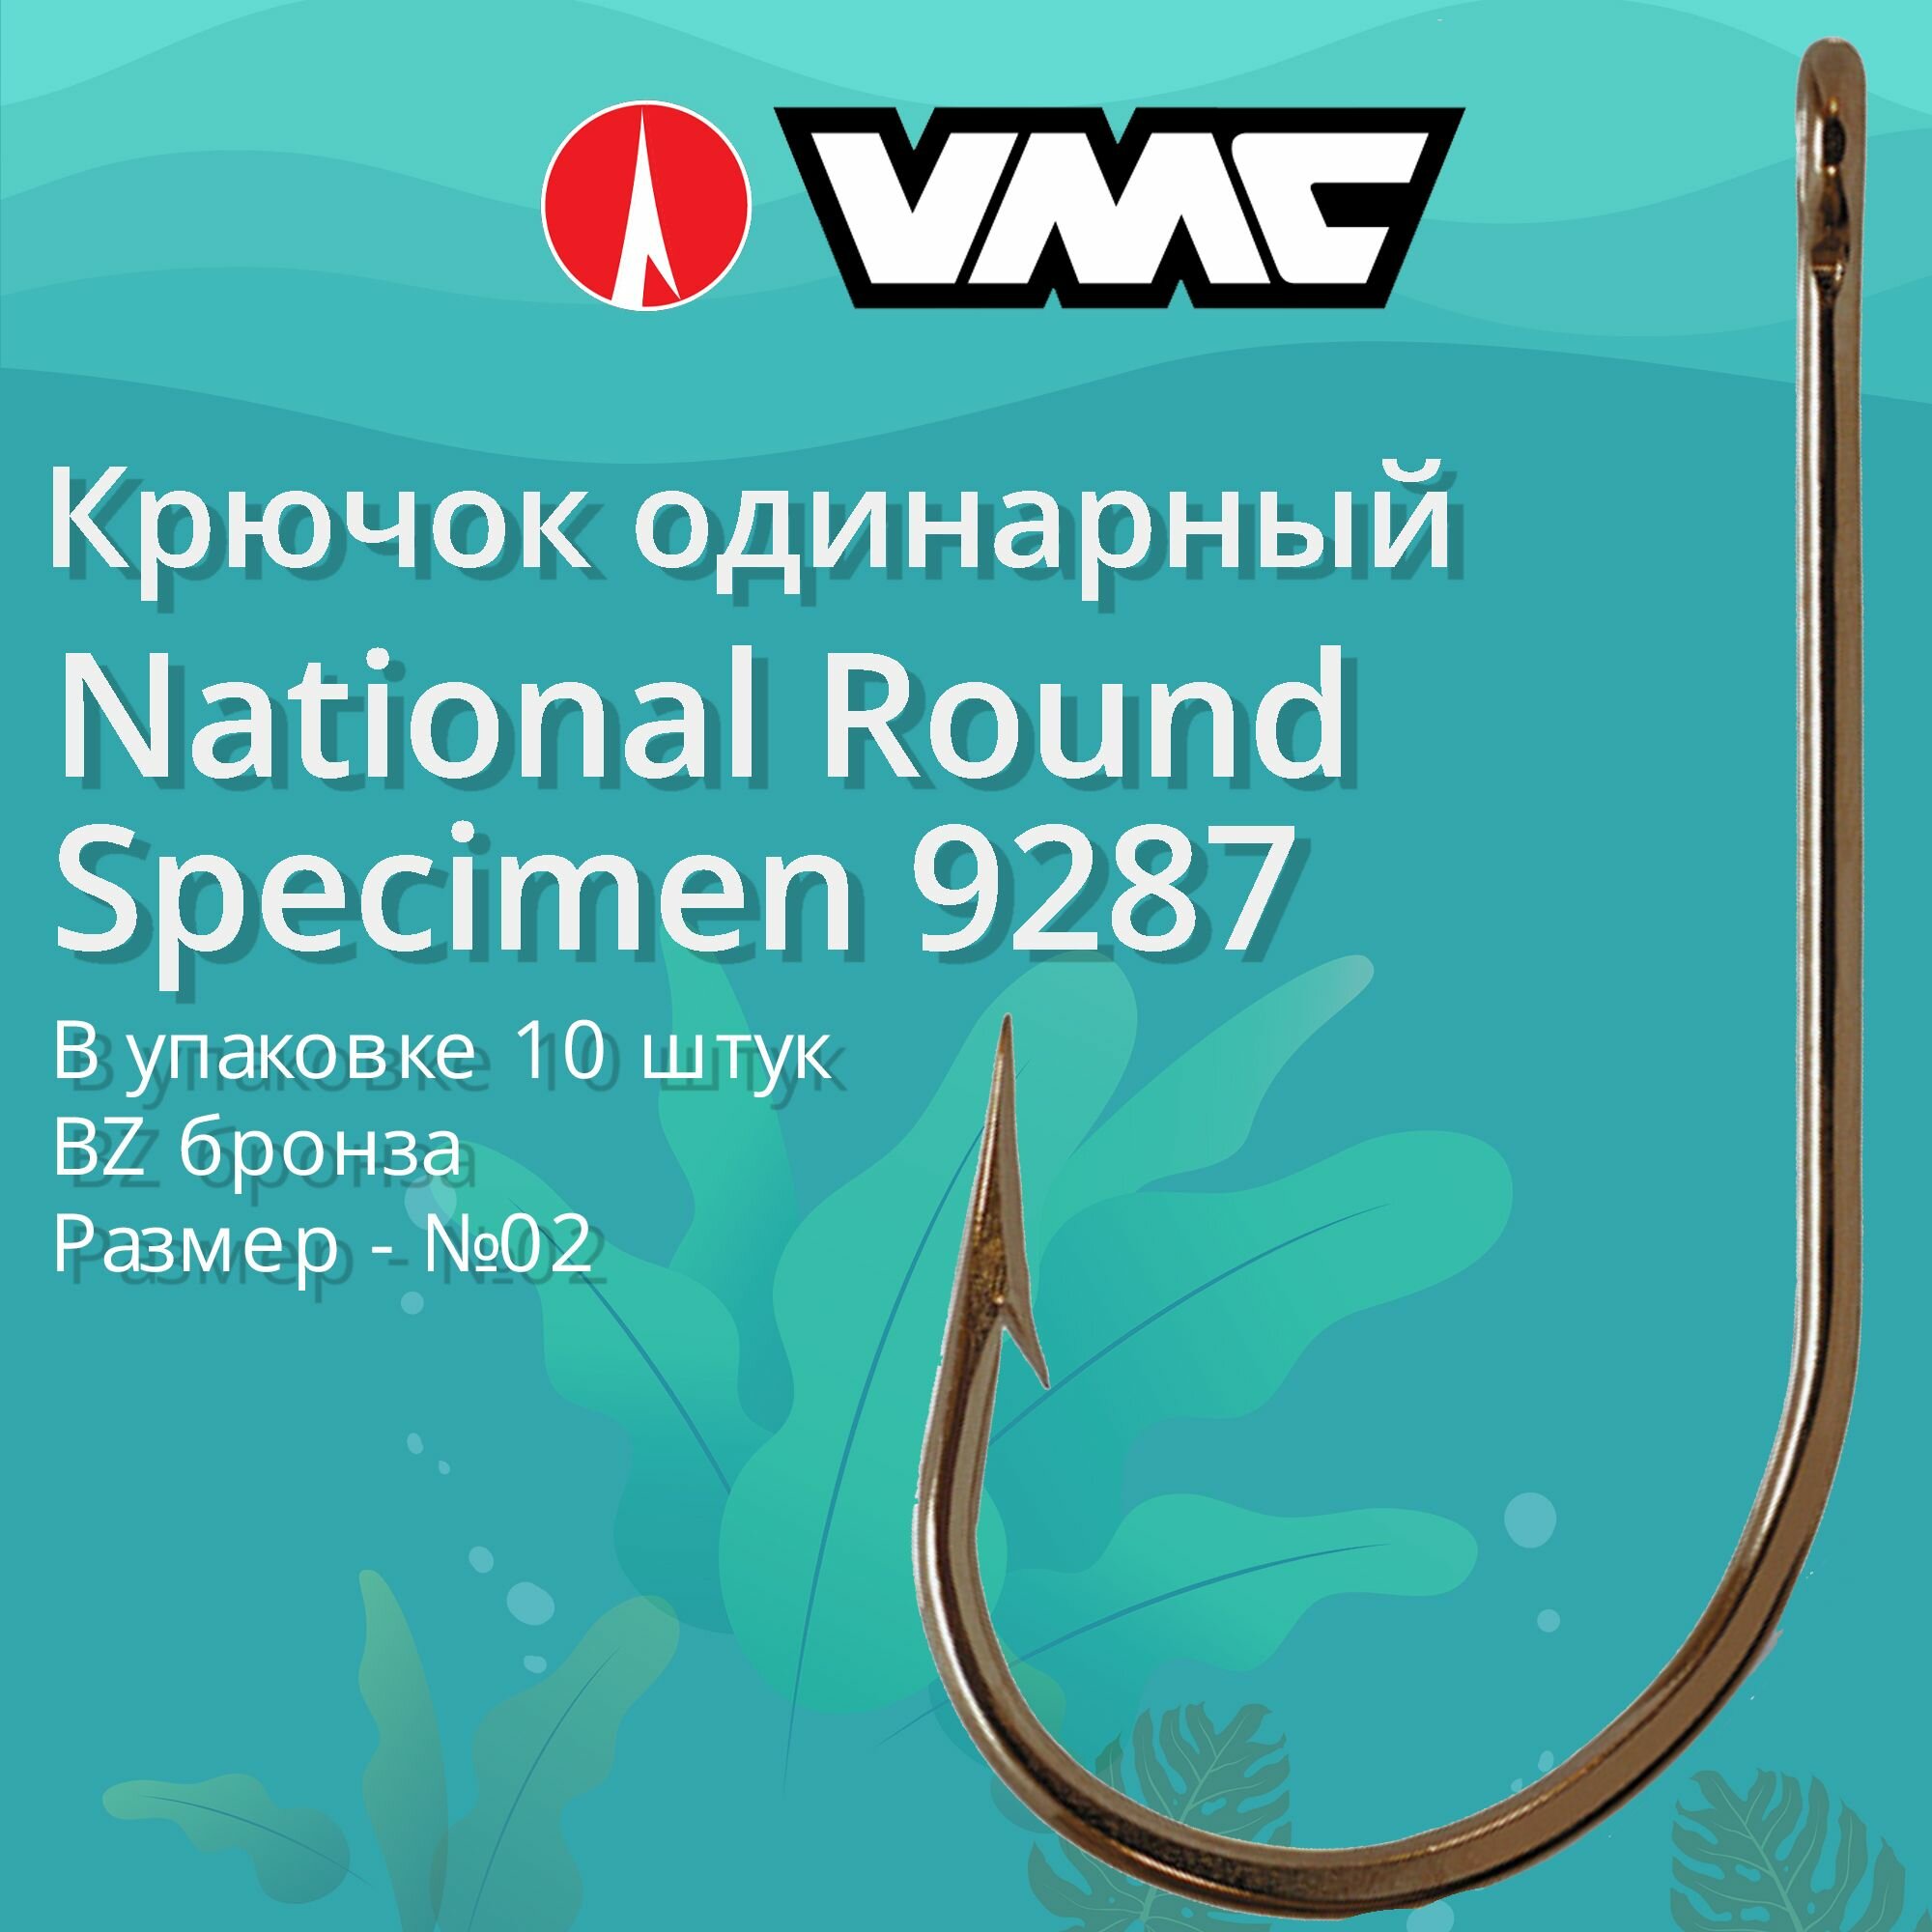 Крючки для рыбалки (одинарный) VMC National Round Specimen 9287 BZ (бронза) №02, упаковка 10 штук